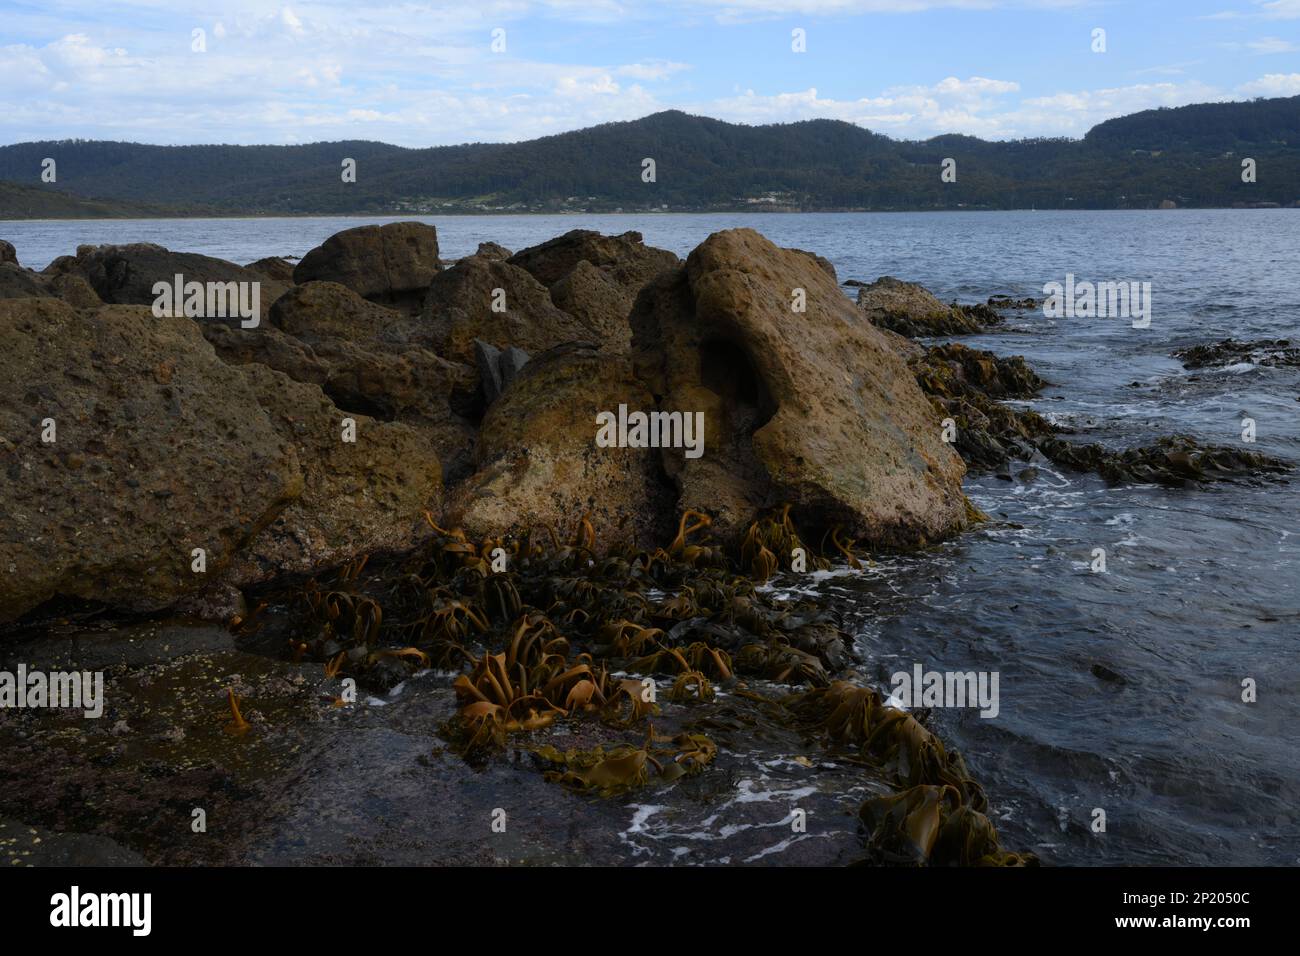 Le varech se déferle dans les hilades lors d'une journée encore dans la baie de Fossil Island, à l'extrémité sud de Pirates Bay, Eaglehawk Neck, Tasmanie Banque D'Images